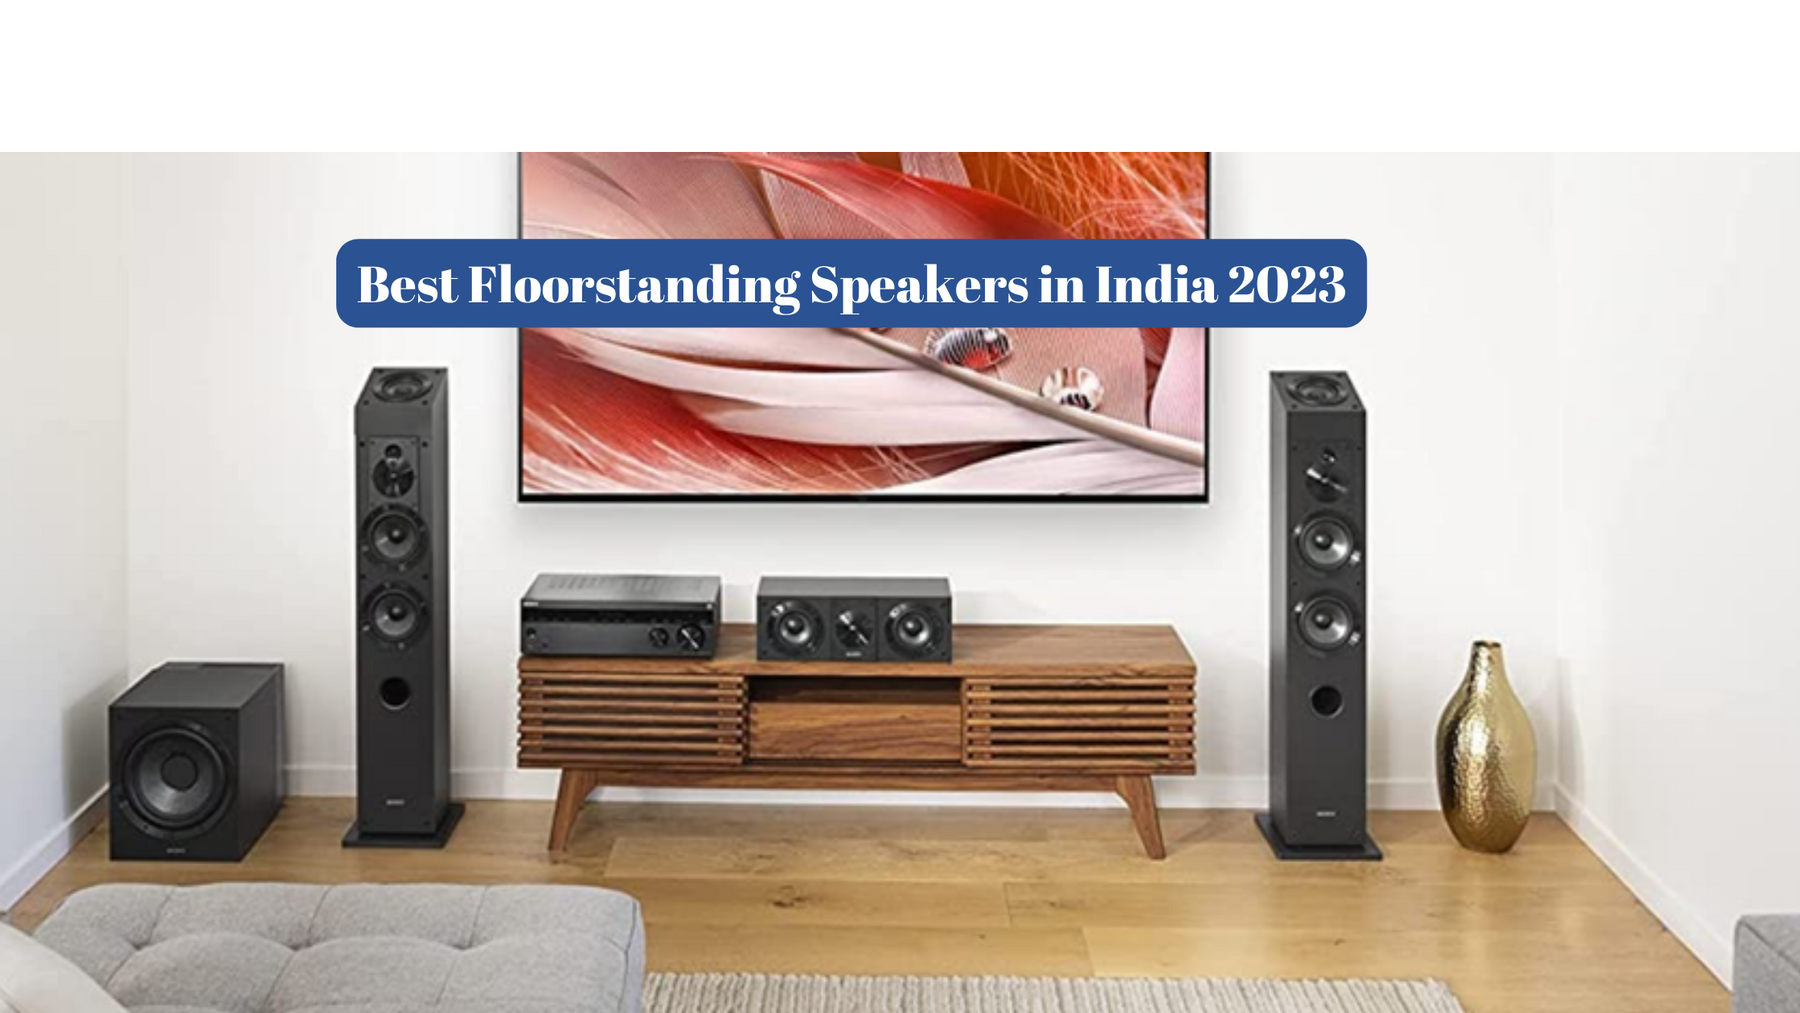 Best Floorstanding Speakers in India 2023: